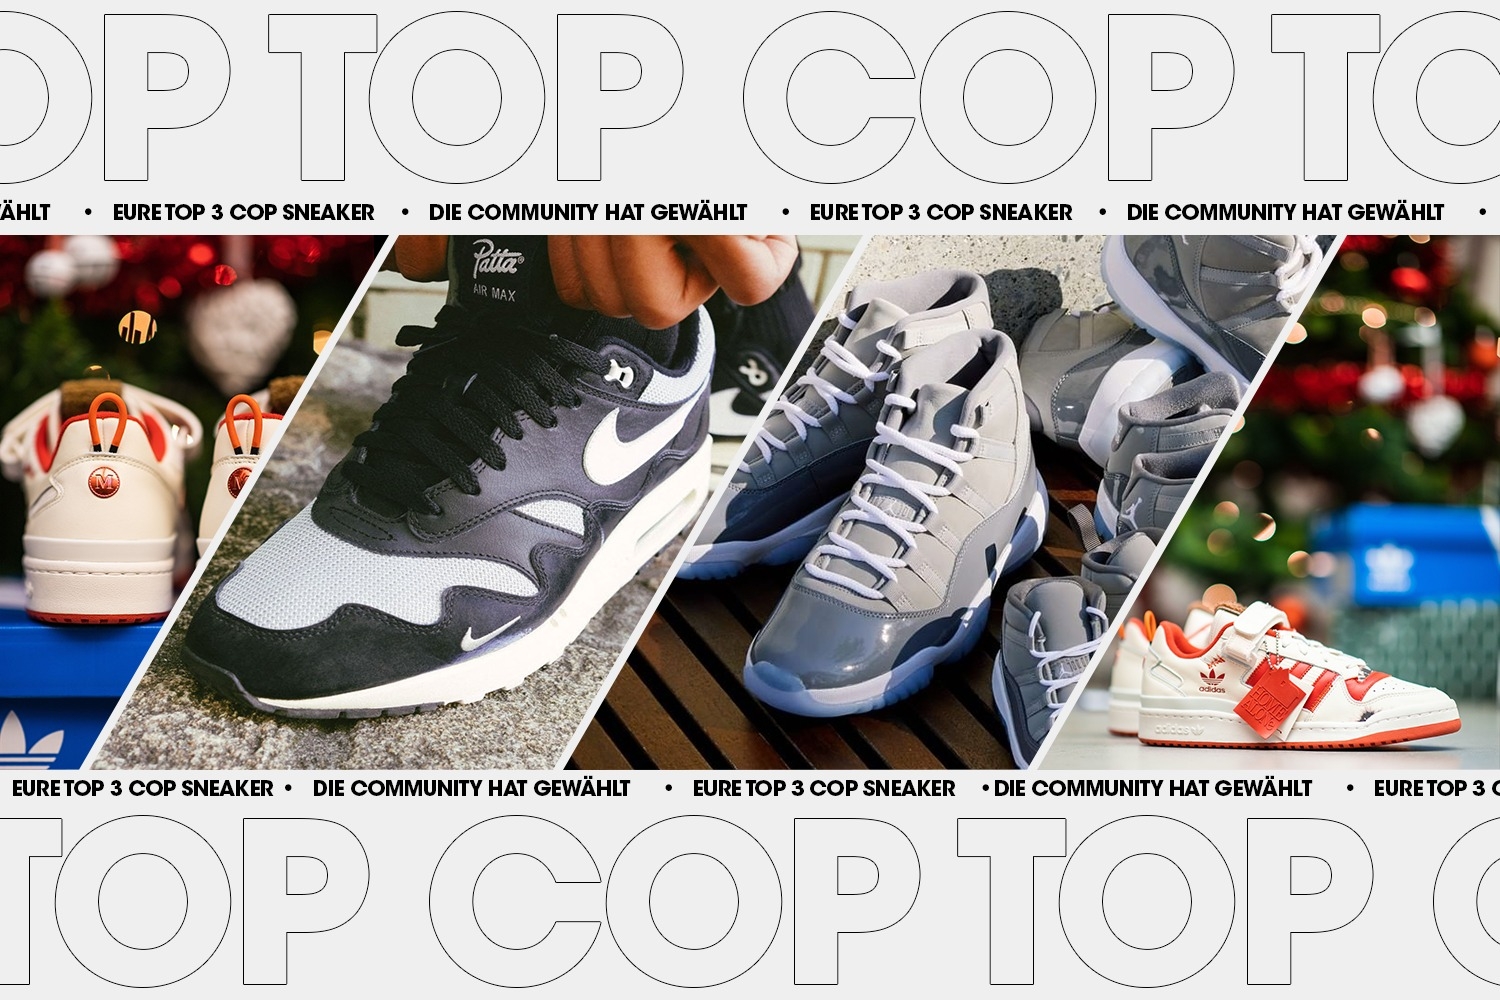 Die Community hat gewählt: Eure Top 3 Cop Sneaker Woche 49